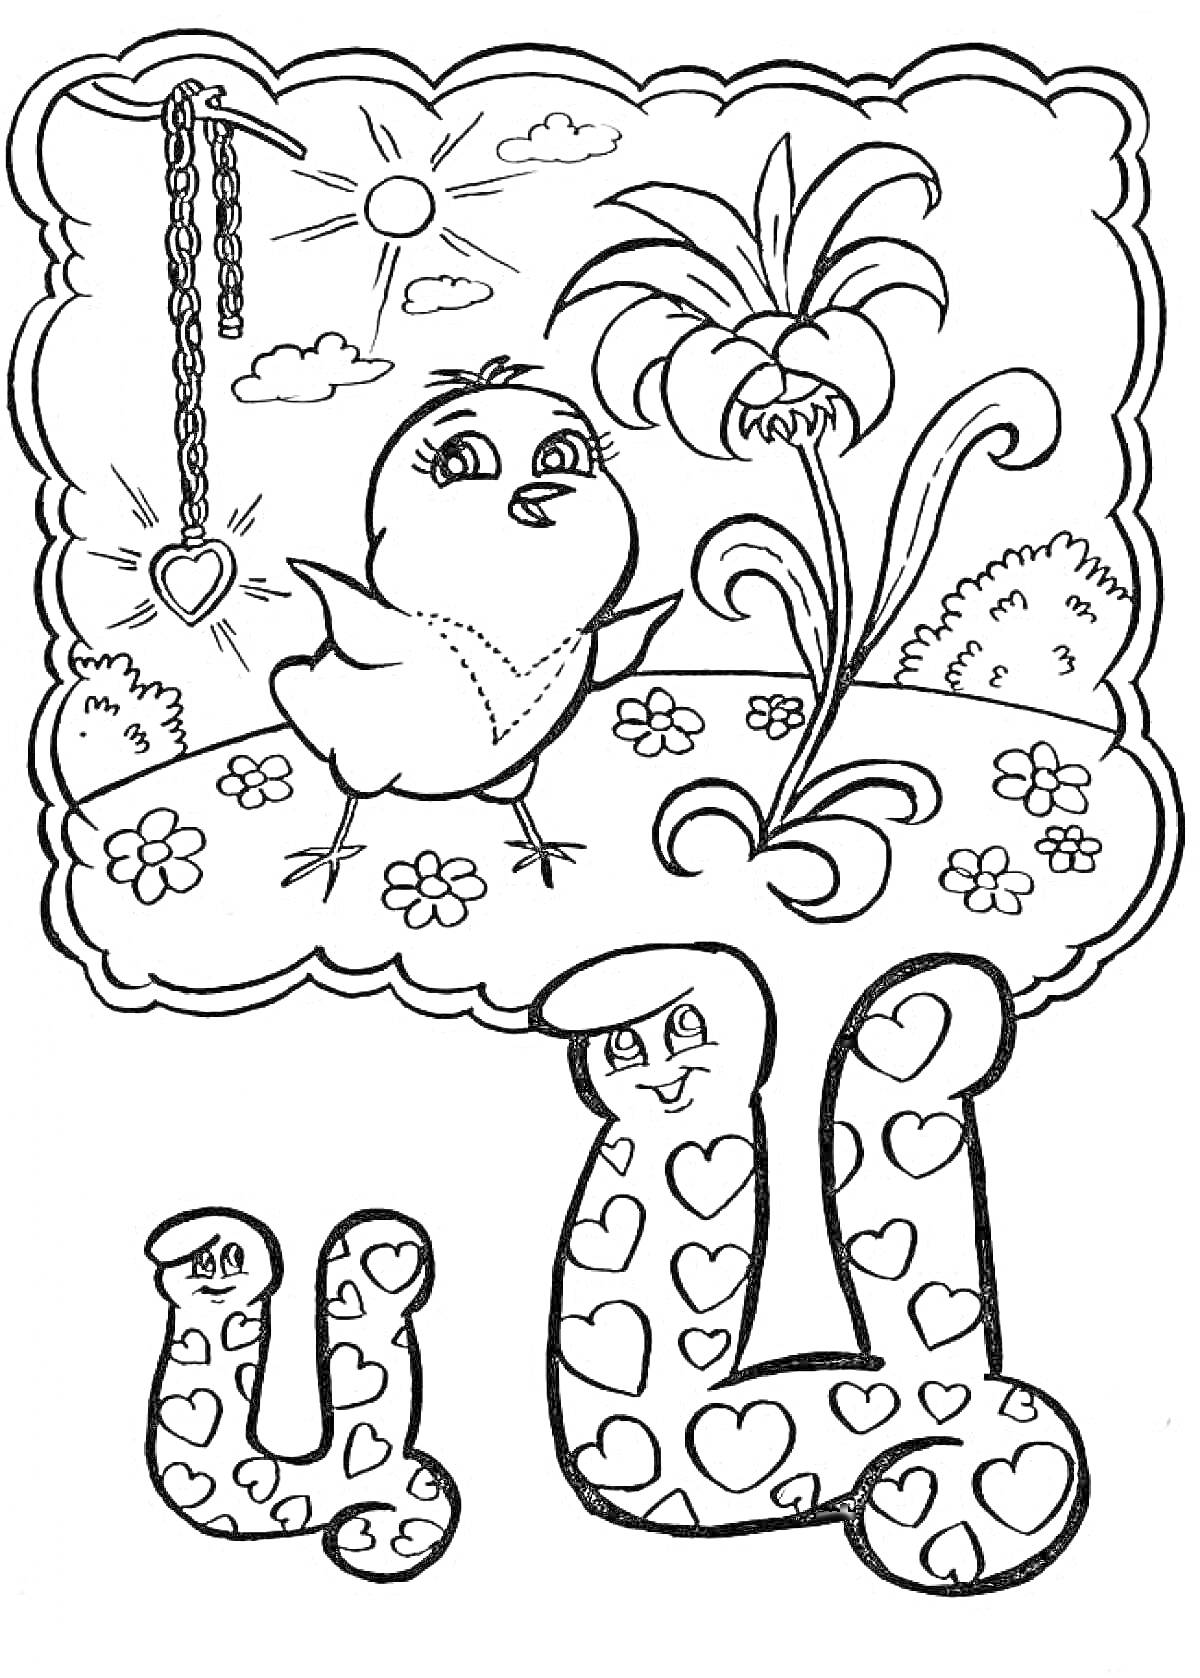 Раскраска Буква Ц с сердечками, цыпленок, цепочка с сердечком, цветок, облака, солнце, трава и цветы